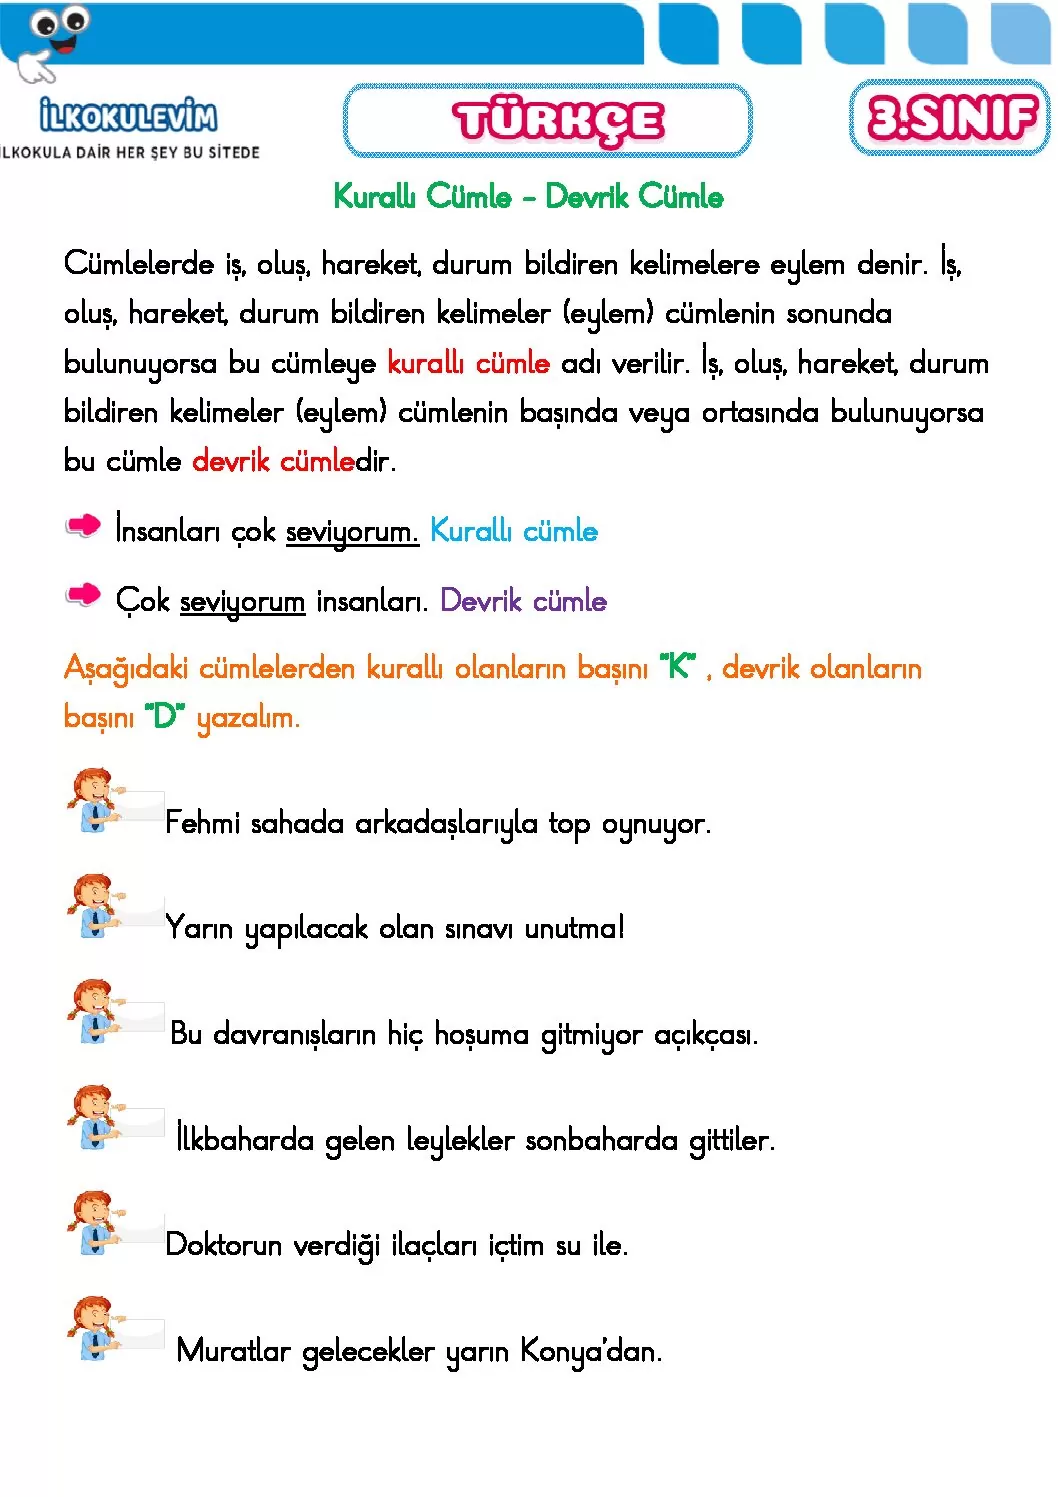 3 sinif turkce kuralli ve devrik cumle etkinligi 1 pdf